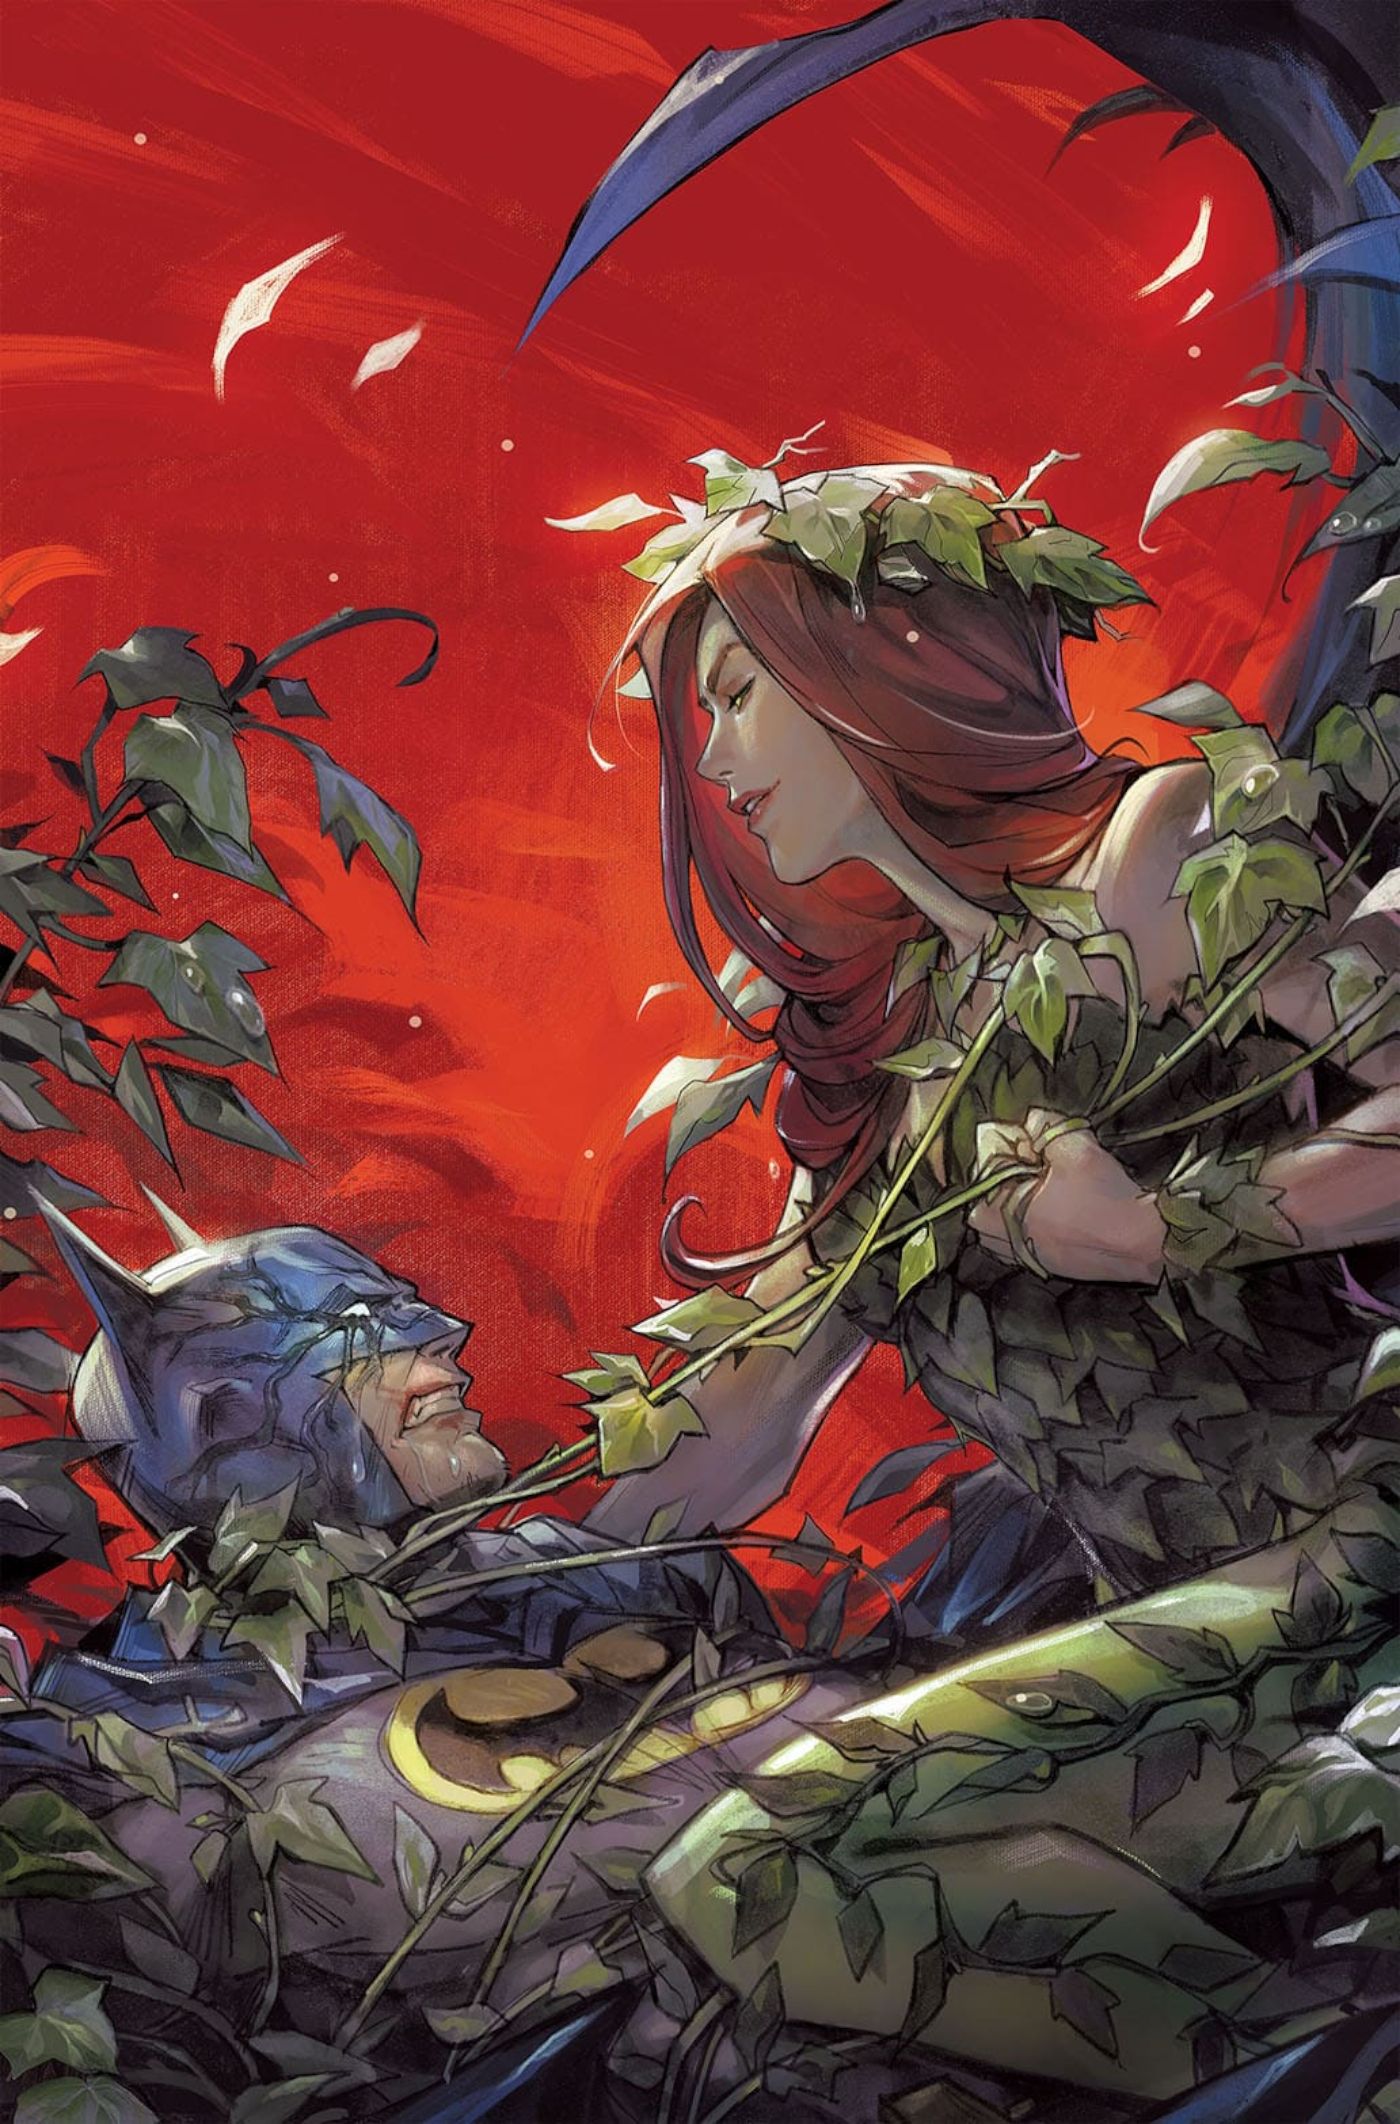 Poison Ivy #21, portada principal de Fong, Poison Ivy y Batman enzarzados en batalla